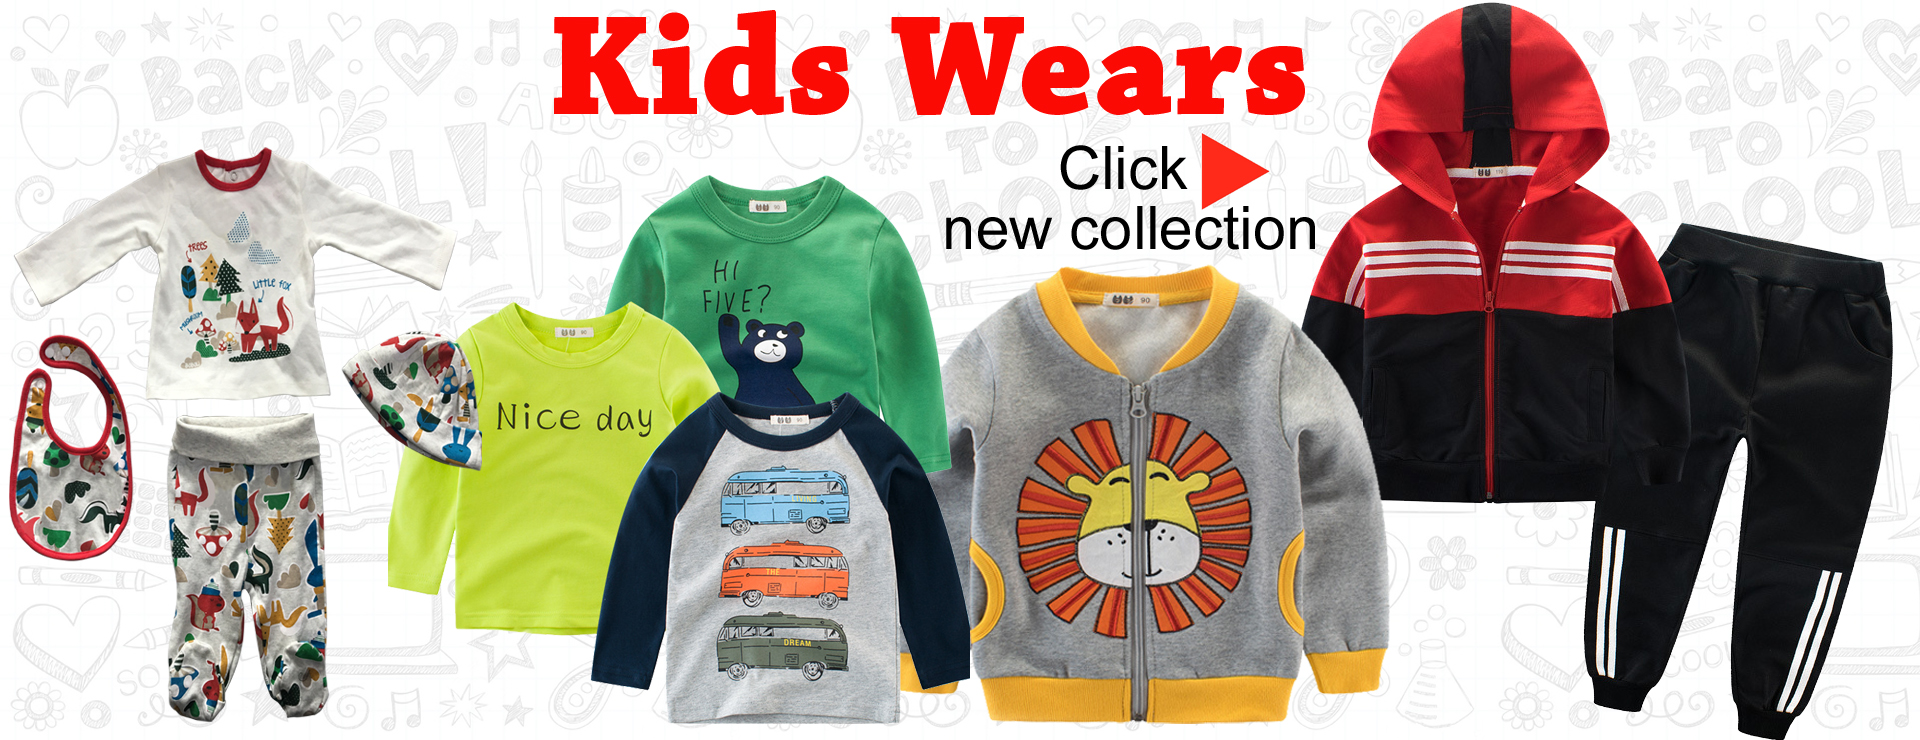 Kids wear kids clothes children garments